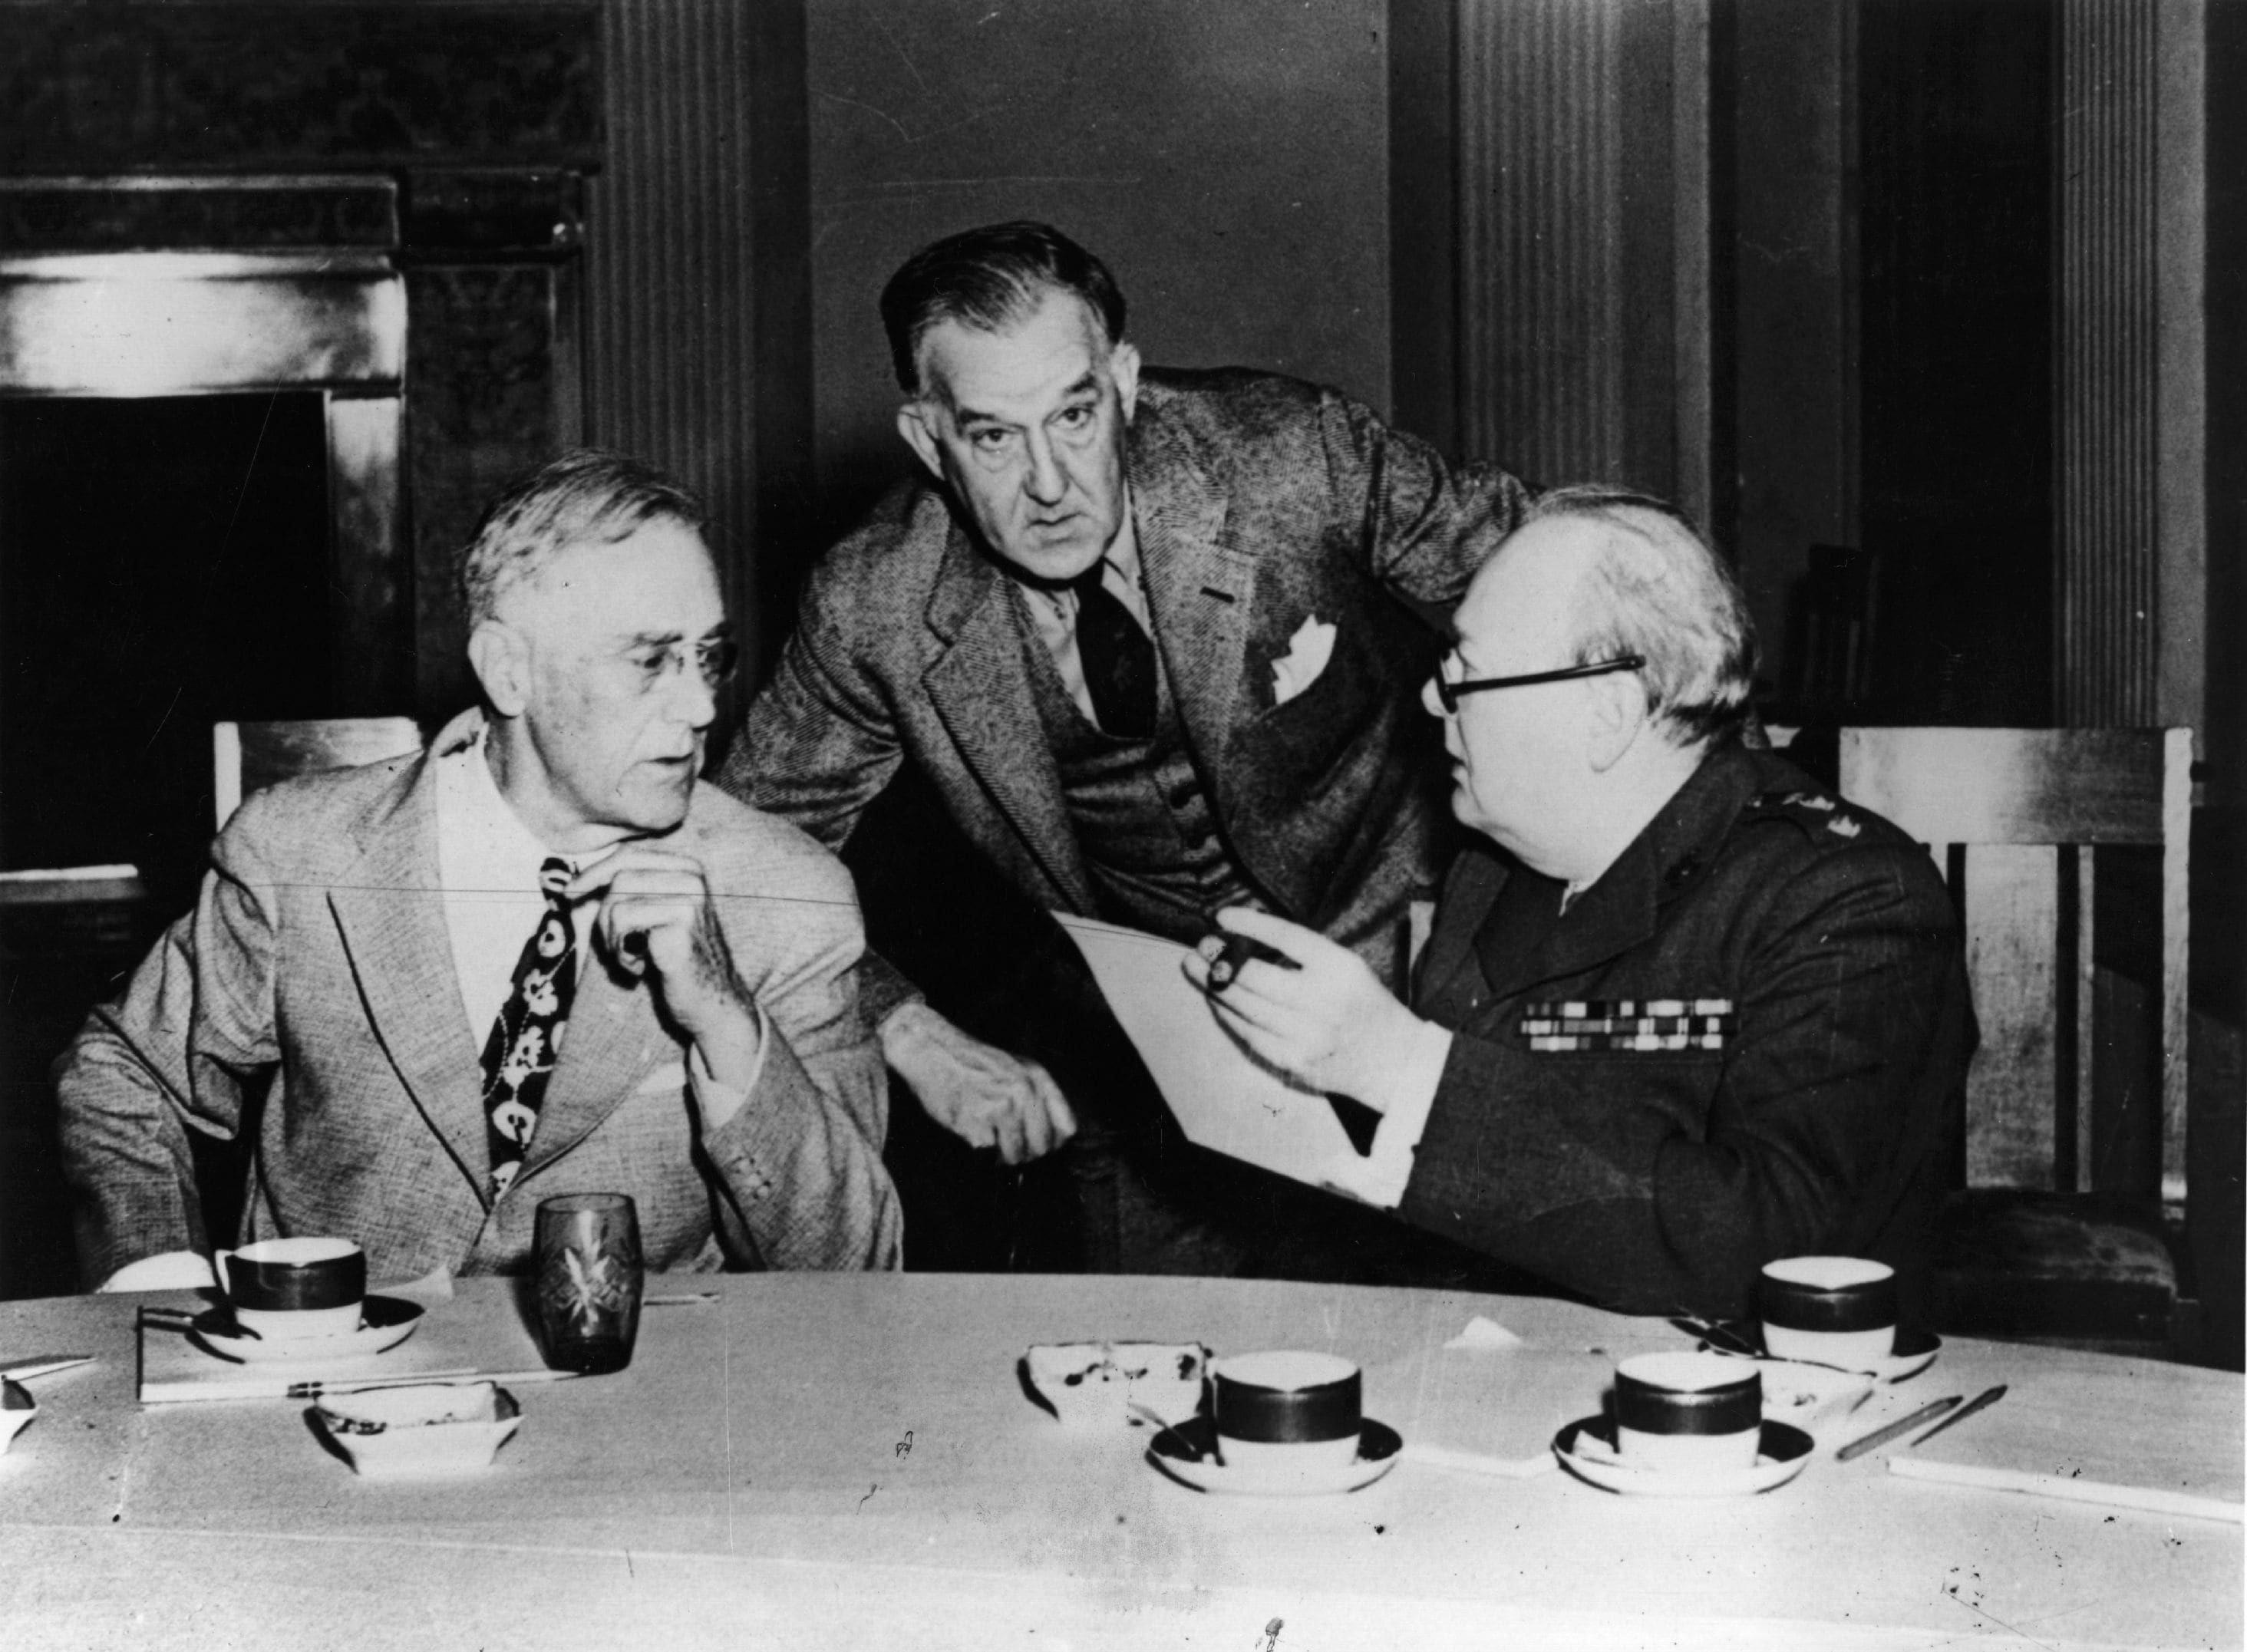 Roosevelt e Churchill durante la conferenza. Il primo morirà pochi mesi dopo di poliomielite, mentre il secondo perderà incredibilmente le elezioni in patria